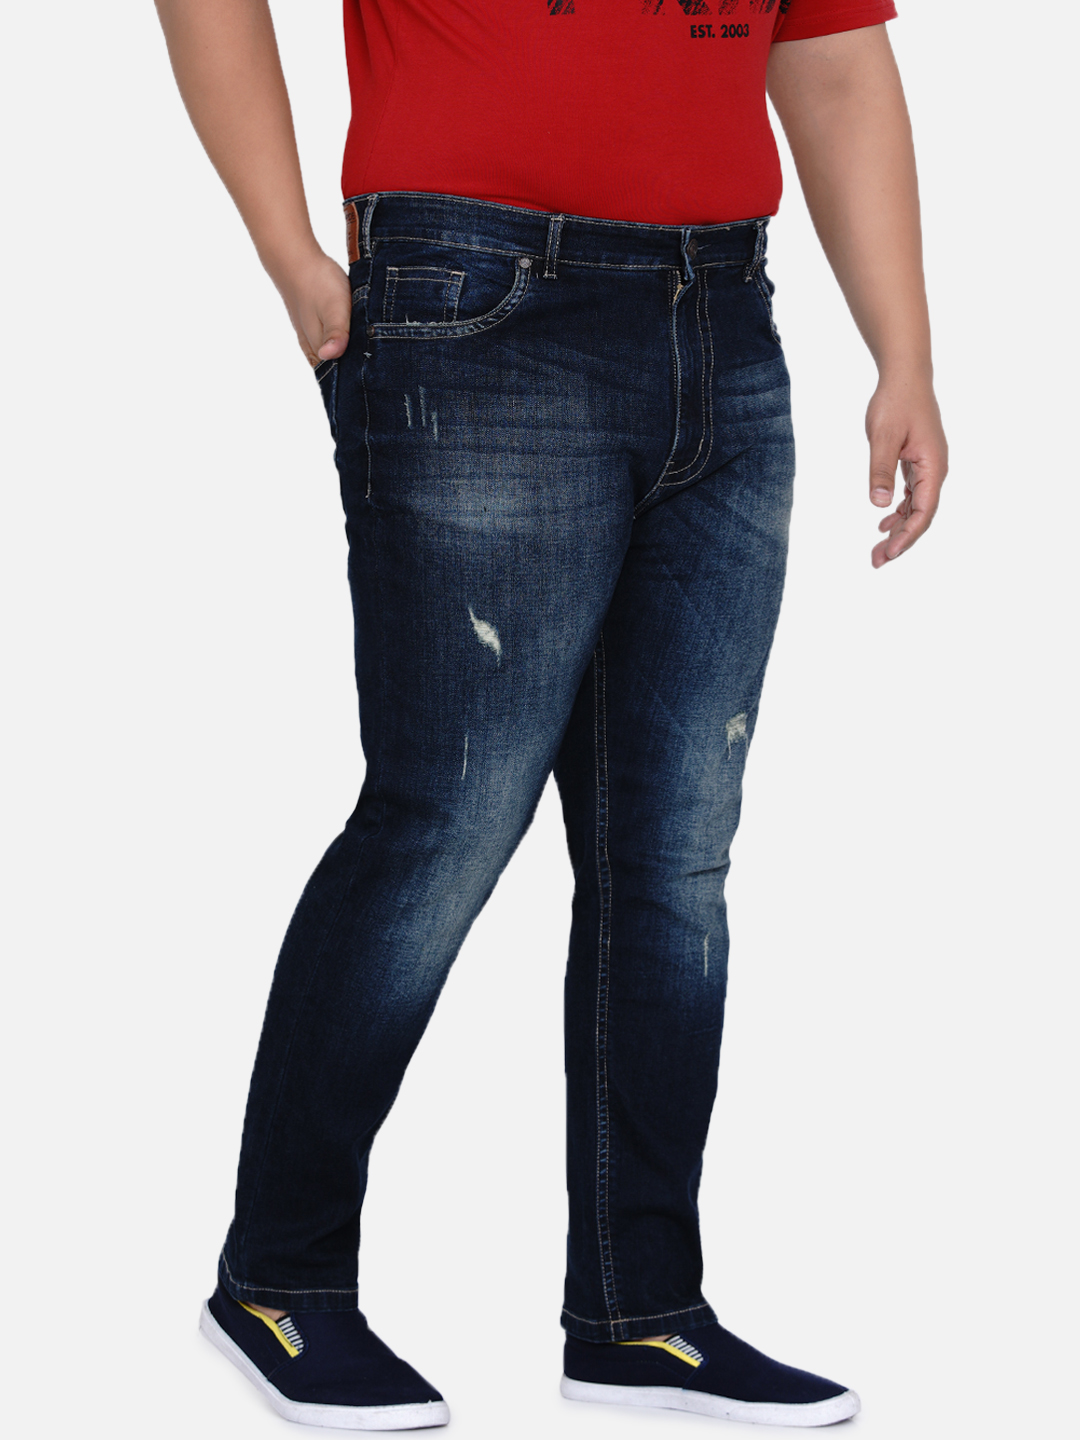 bottomwear/jeans/JPJ12184/jpj12184-1.jpg